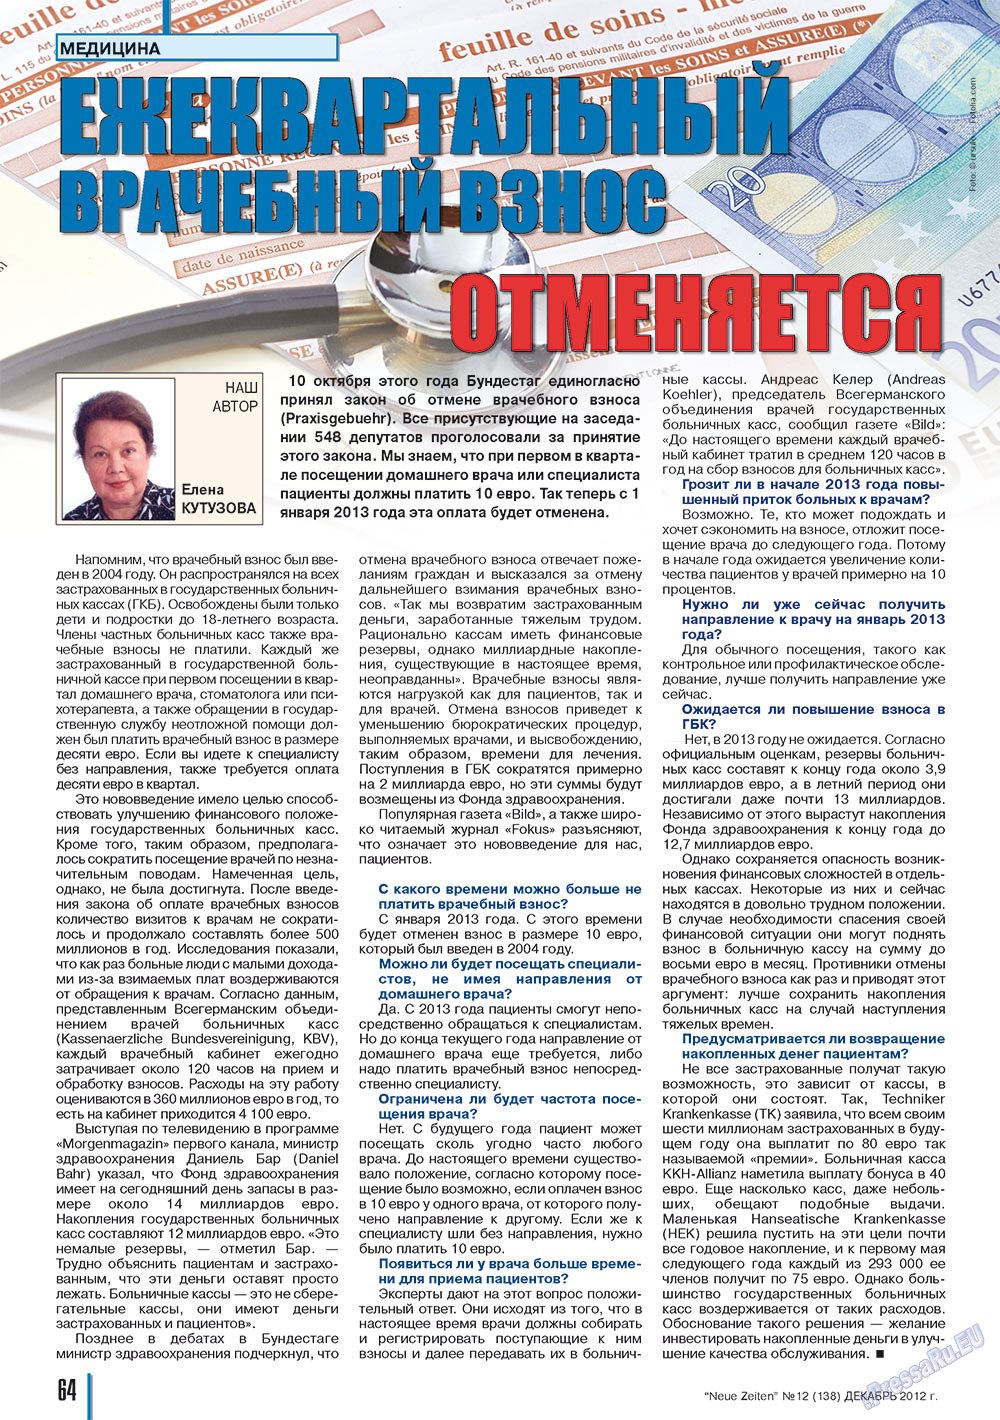 Neue Zeiten, журнал. 2012 №12 стр.64